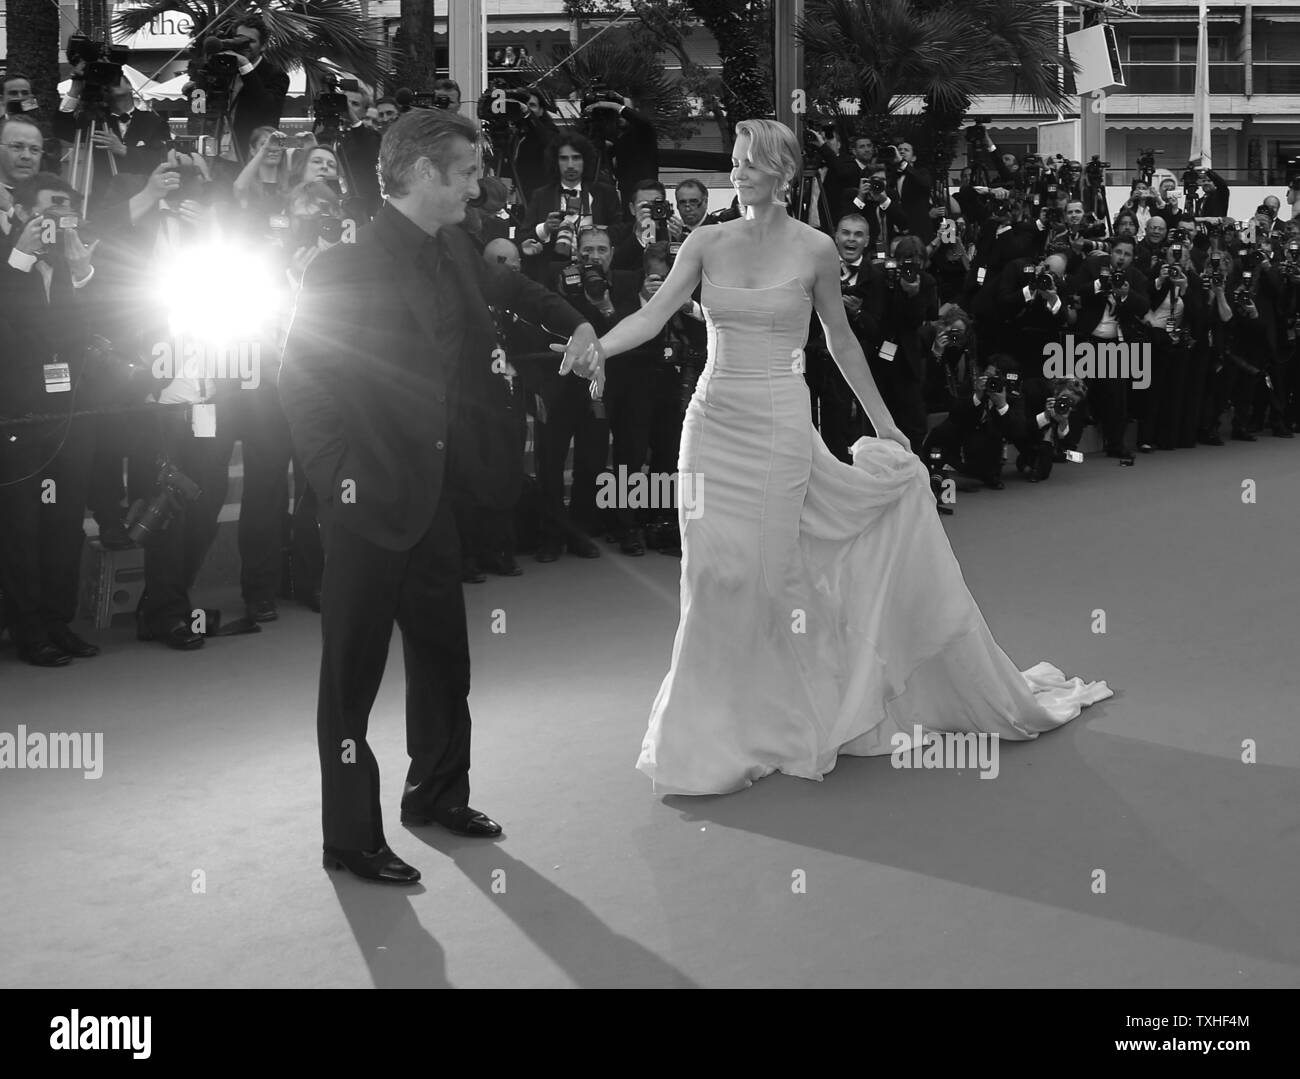 Sean Penn y Charlize Theron llega a la alfombra roja antes de la proyección de la película 'Mad Max: Fury Road' durante la 68ª conferencia anual de Cannes Festival Internacional de Cine de Cannes, Francia, el 14 de mayo de 2015. Foto por David Silpa/UPI Foto de stock